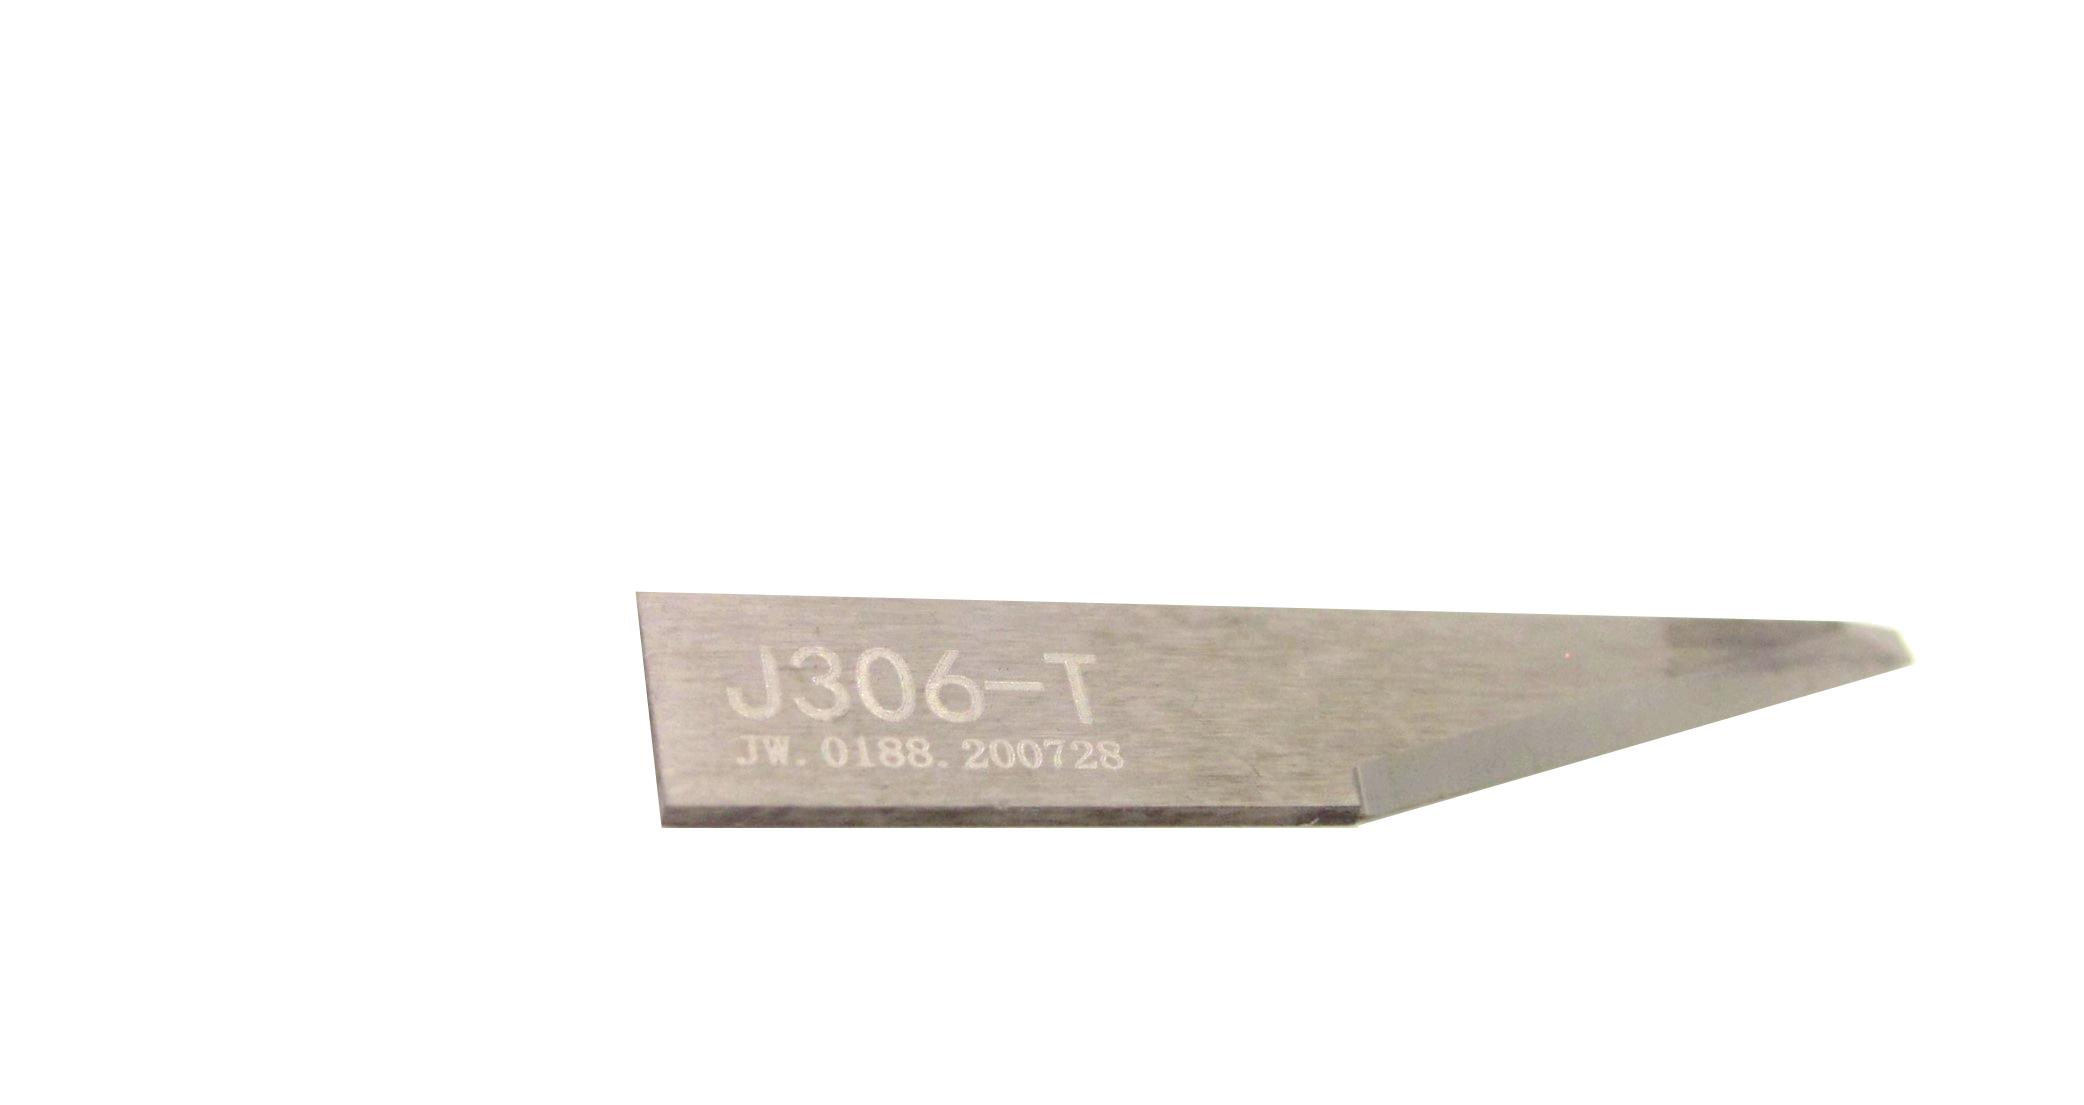 Blade type Jwei j306T